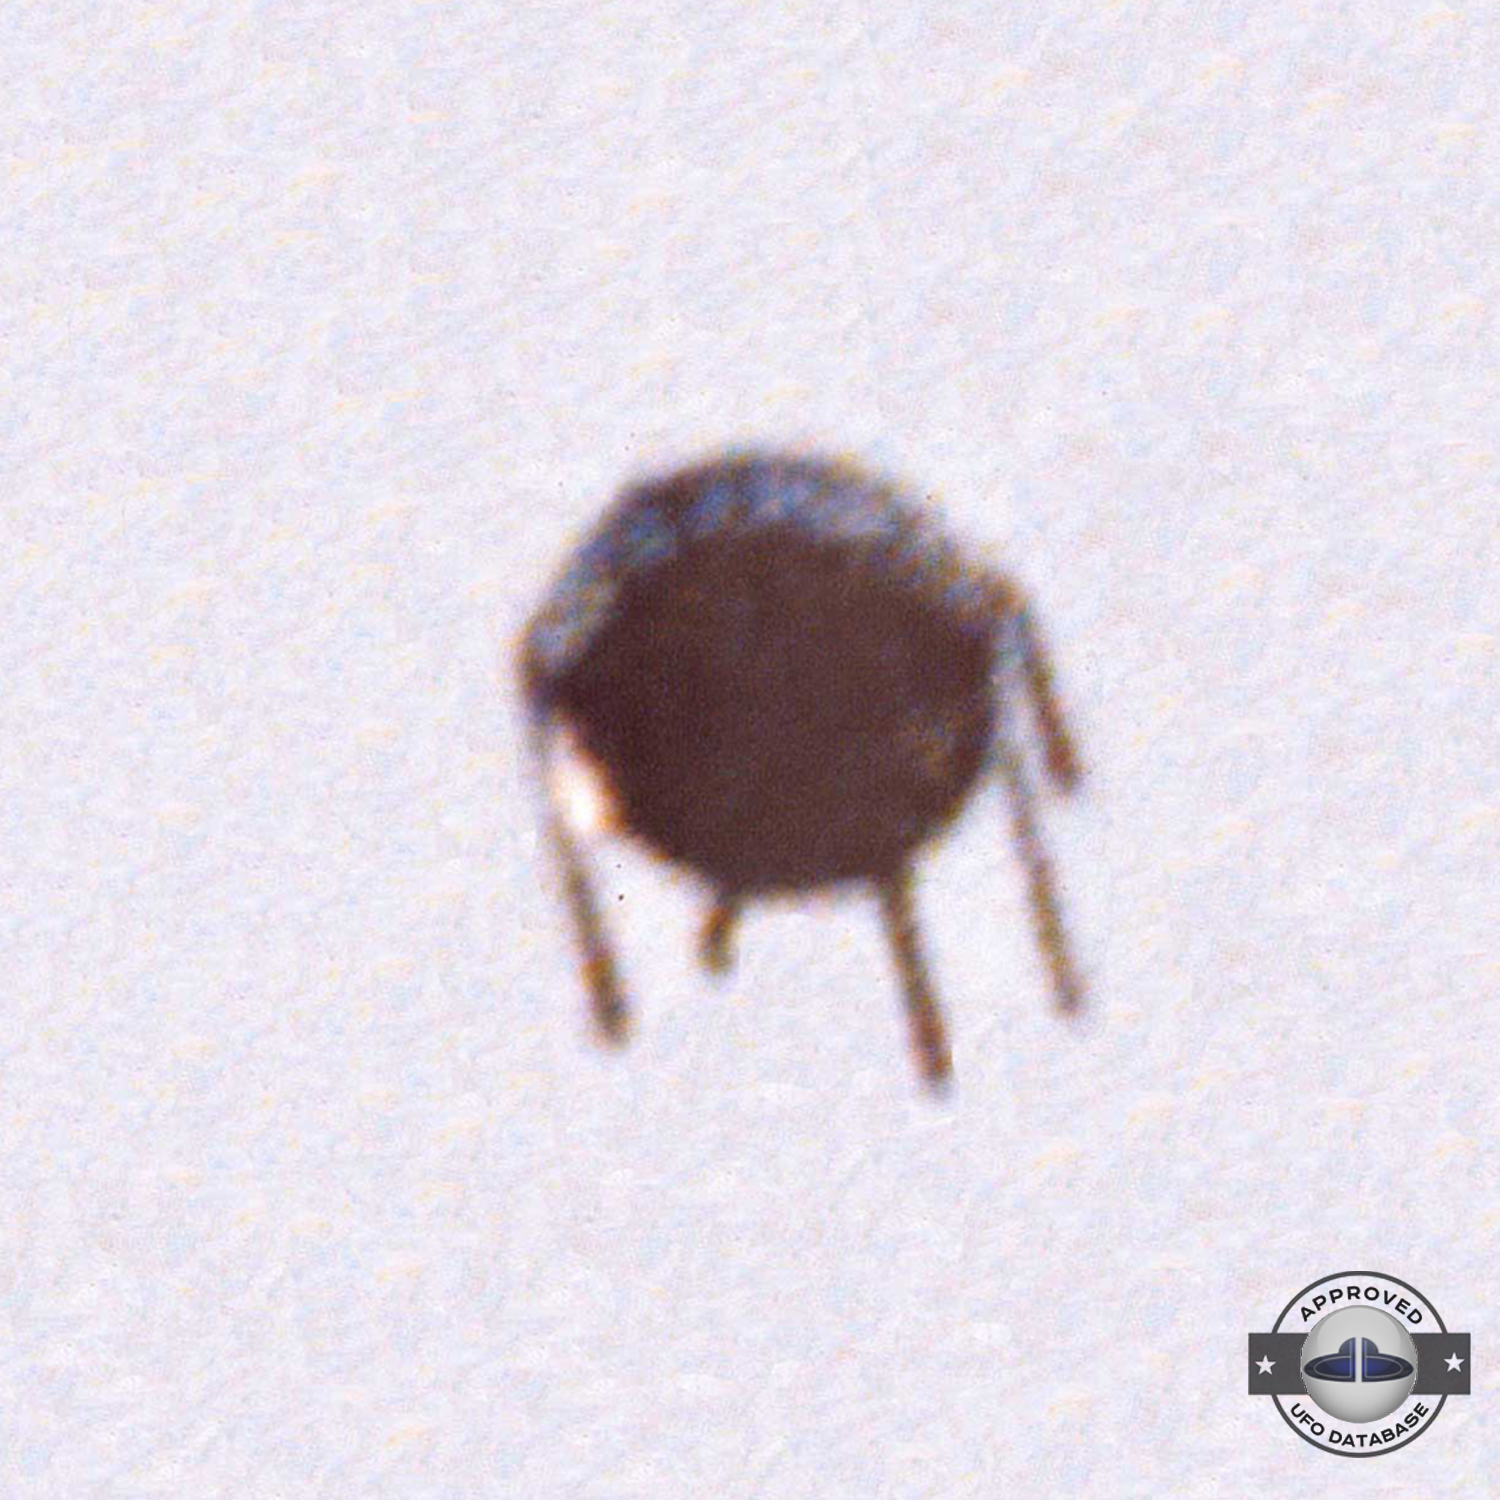 Strange UFO similar to Sputnik satellite seen in Alfena Portugal 1990 UFO Picture #472-2